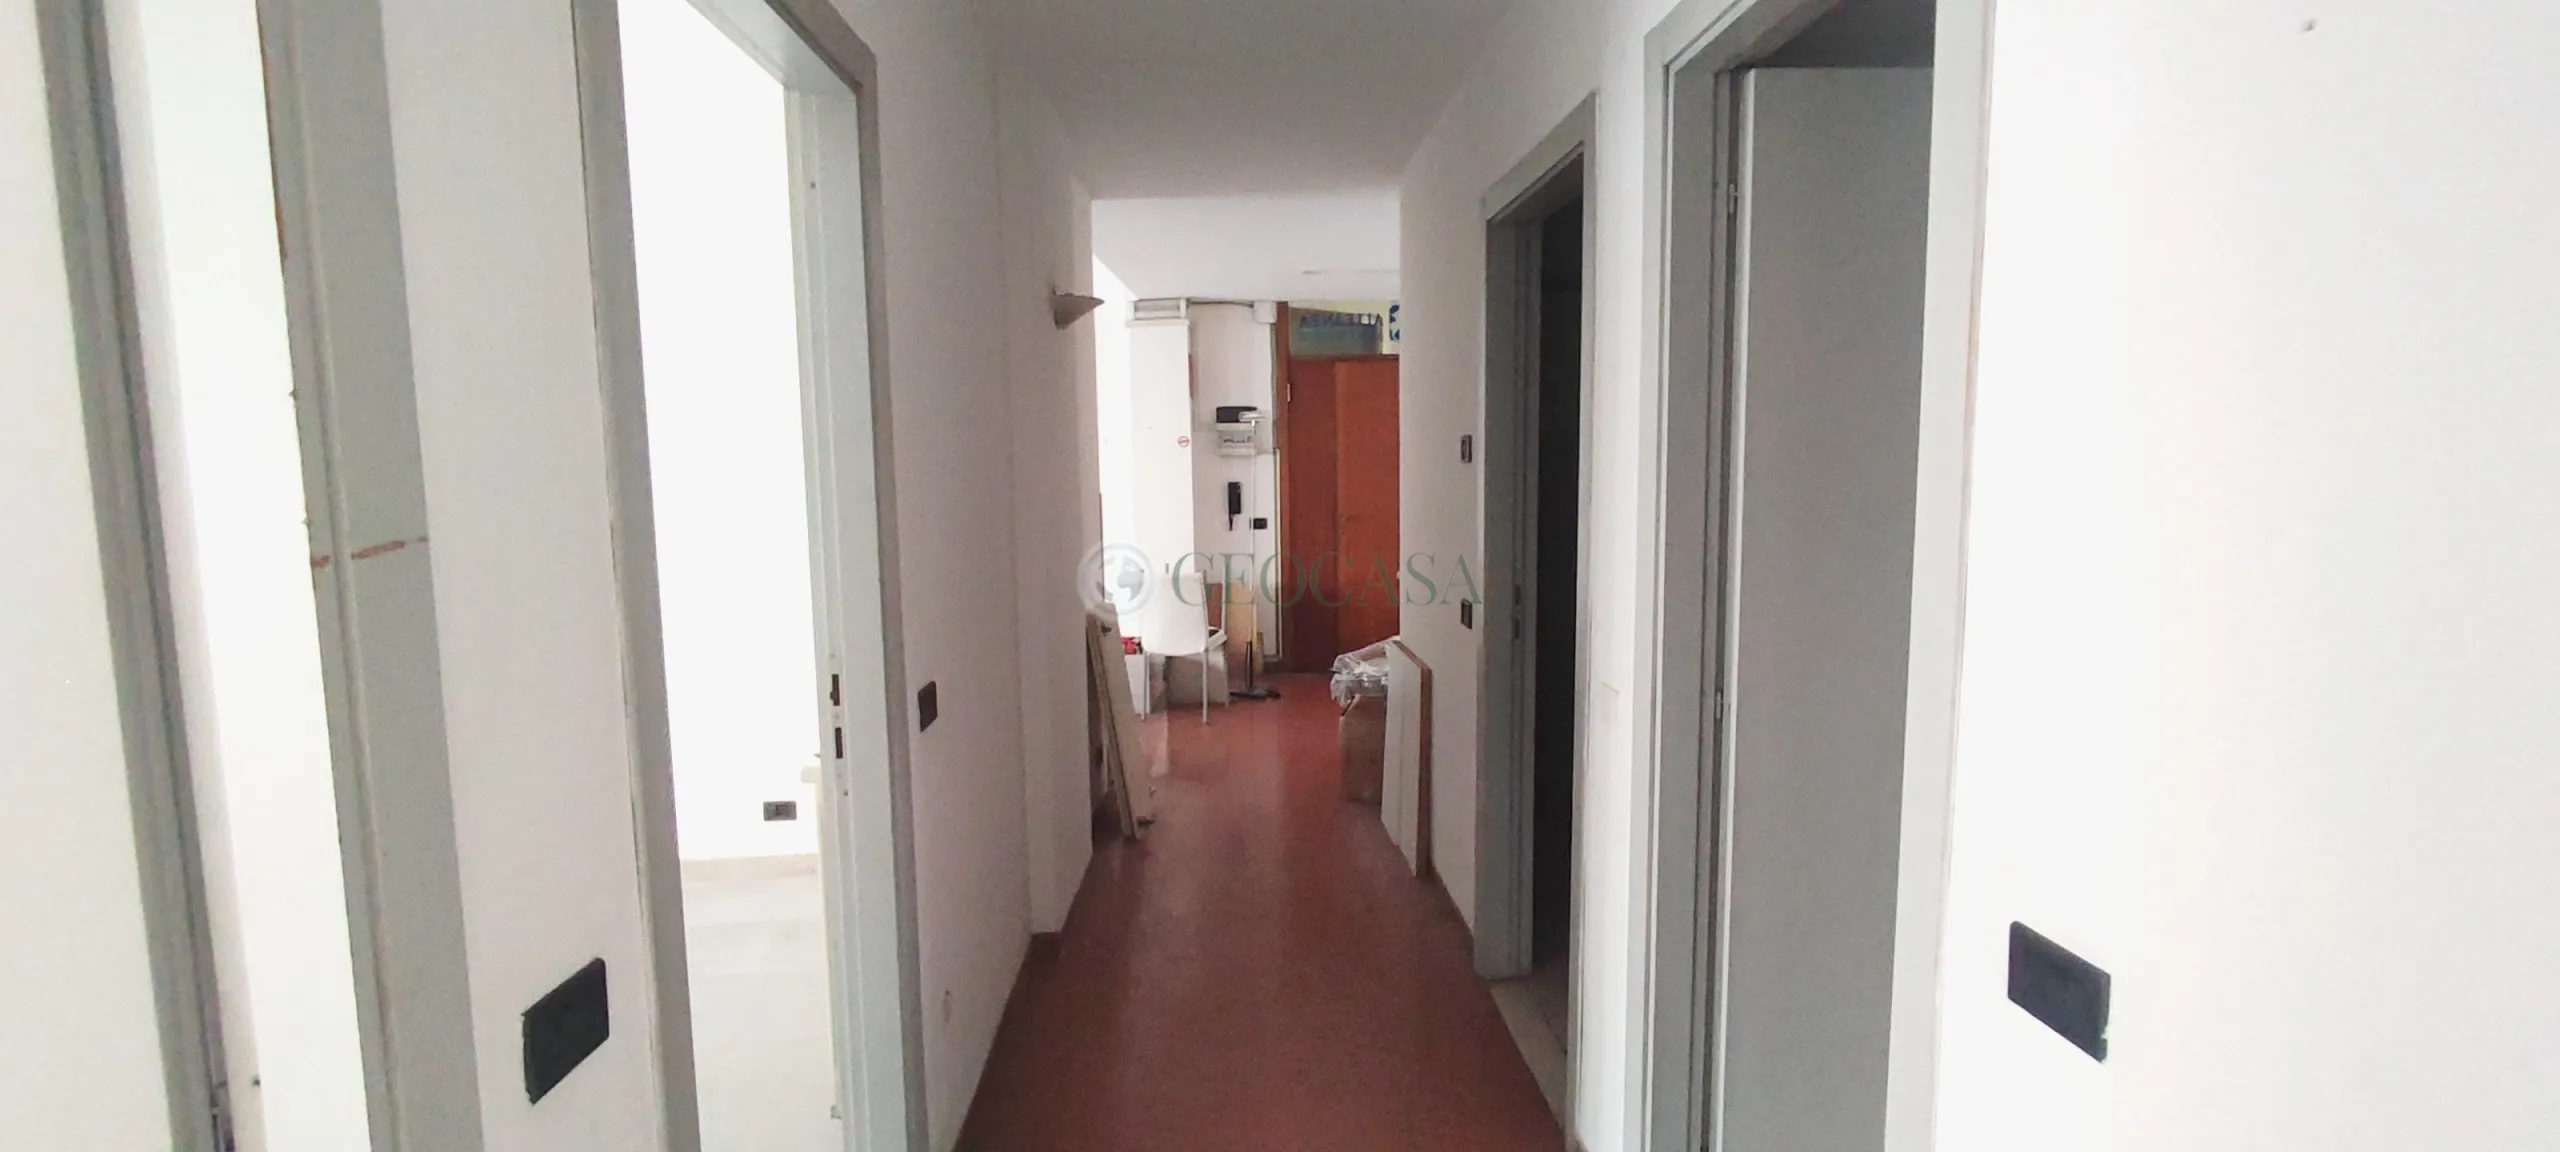 Immagine per Appartamento in vendita a Sarzana via Bertoloni 43